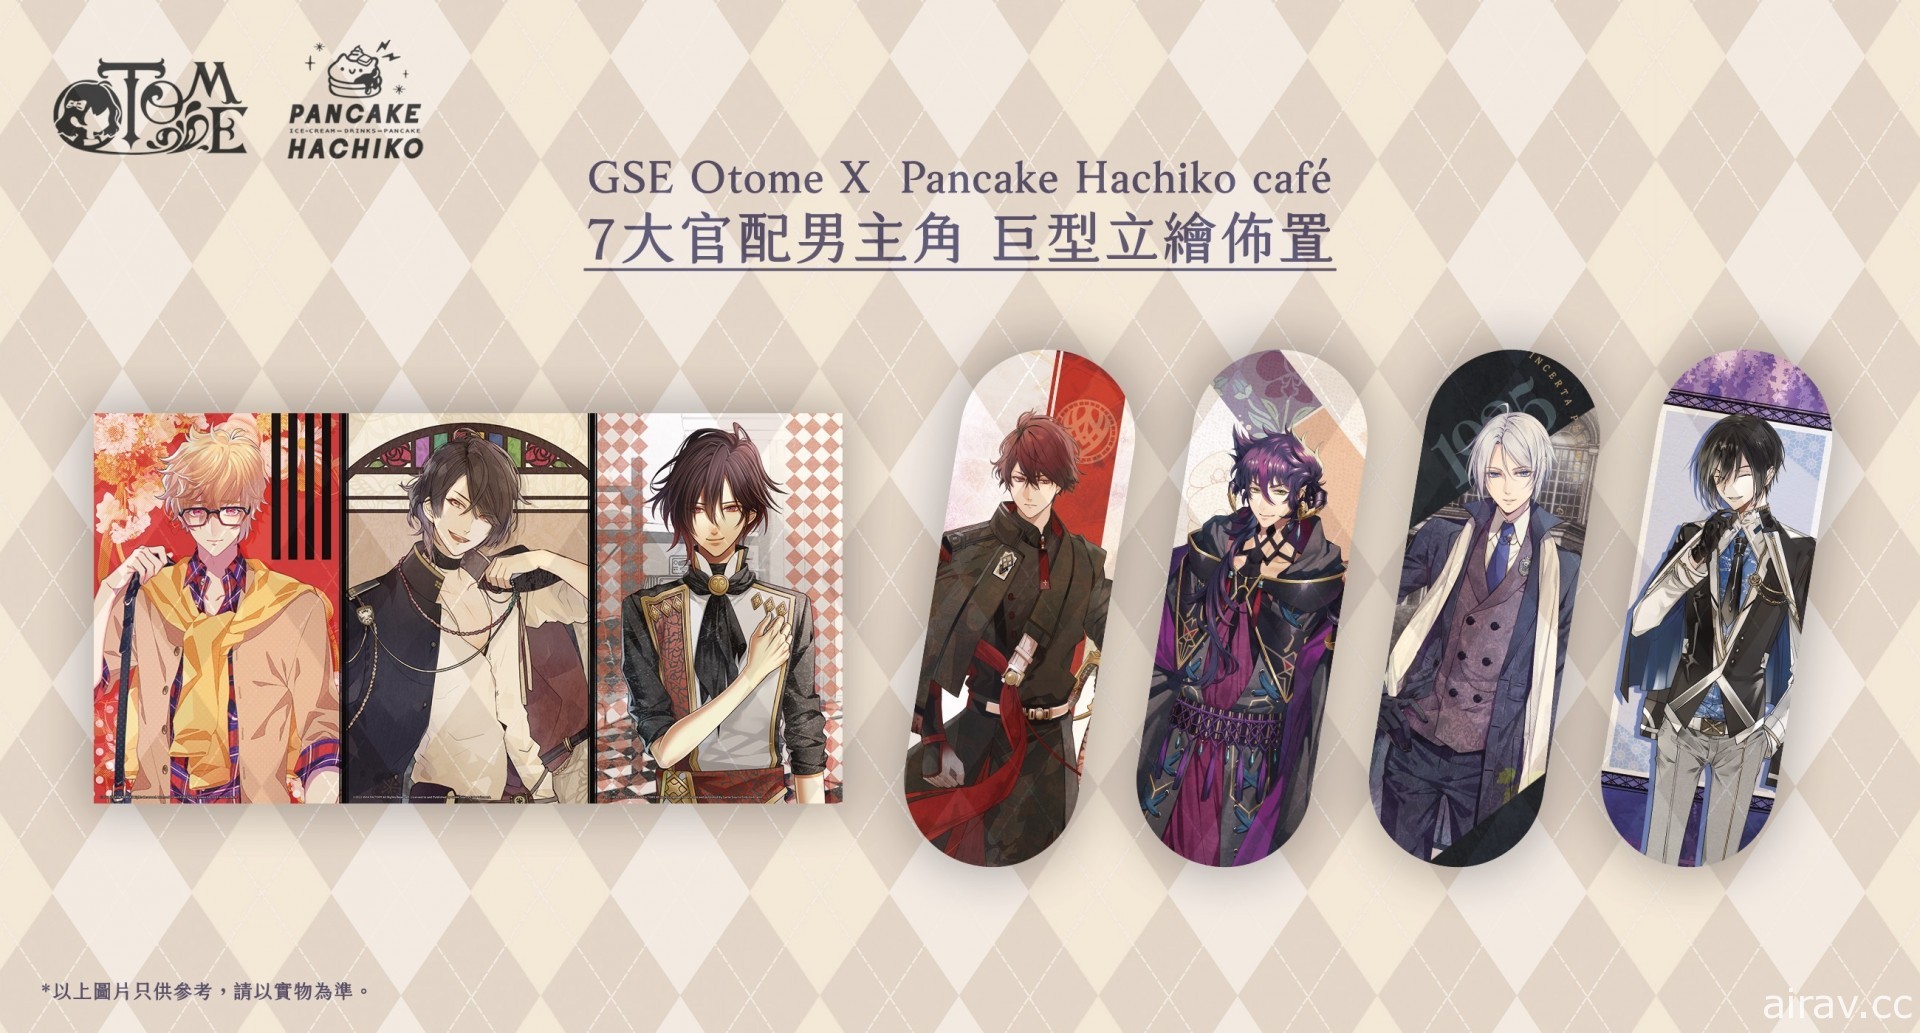 乙女主題 CAFE 活動 GSE Otome × Pancake Hachiko café 將於 8 月在香港舉行